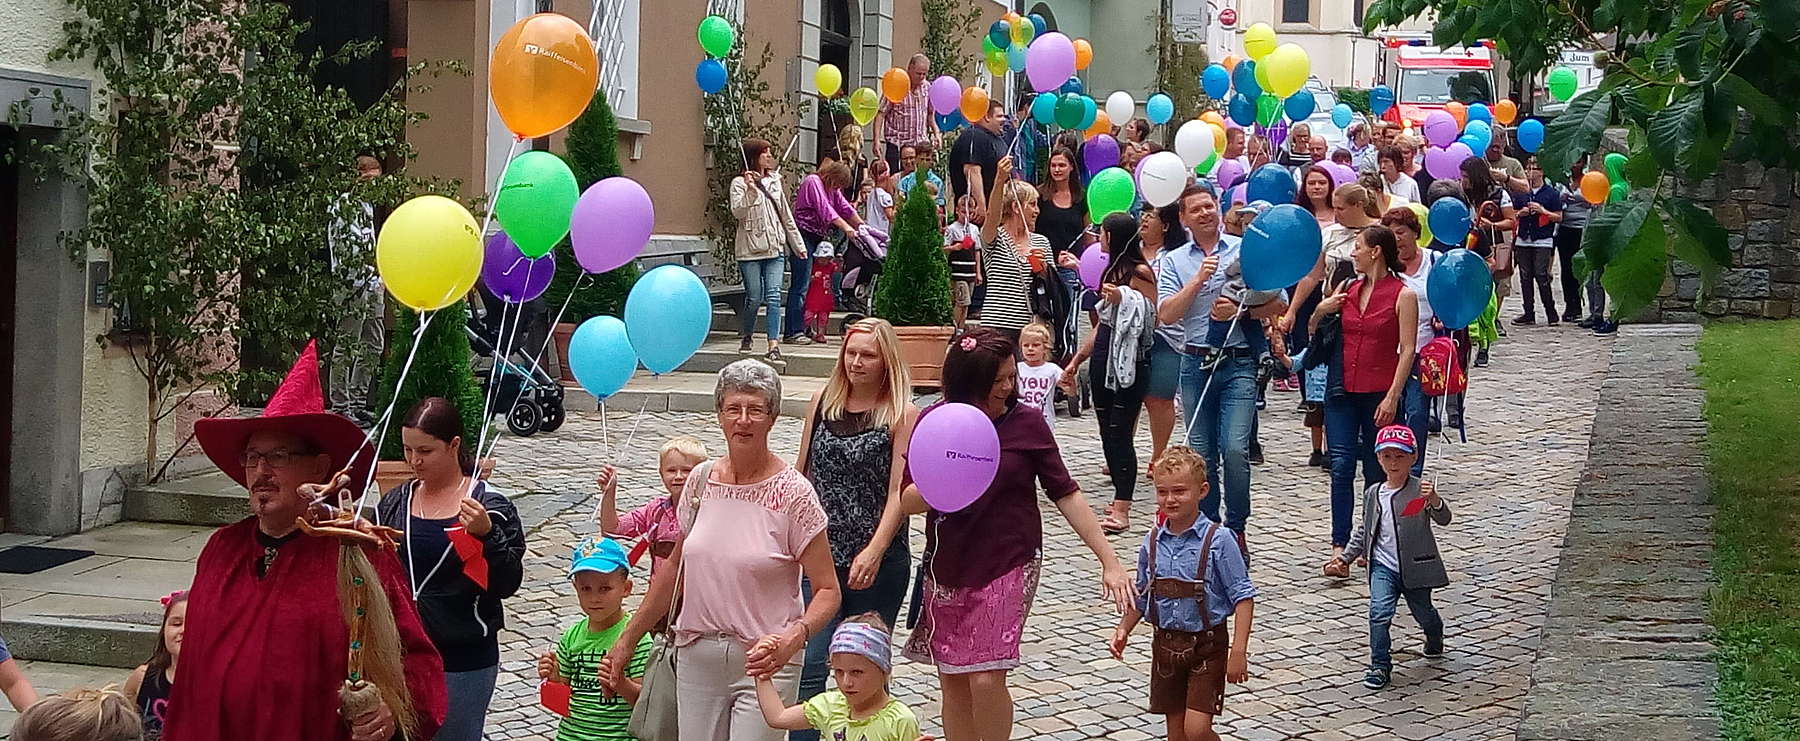 Kinderzug mit Luftballon